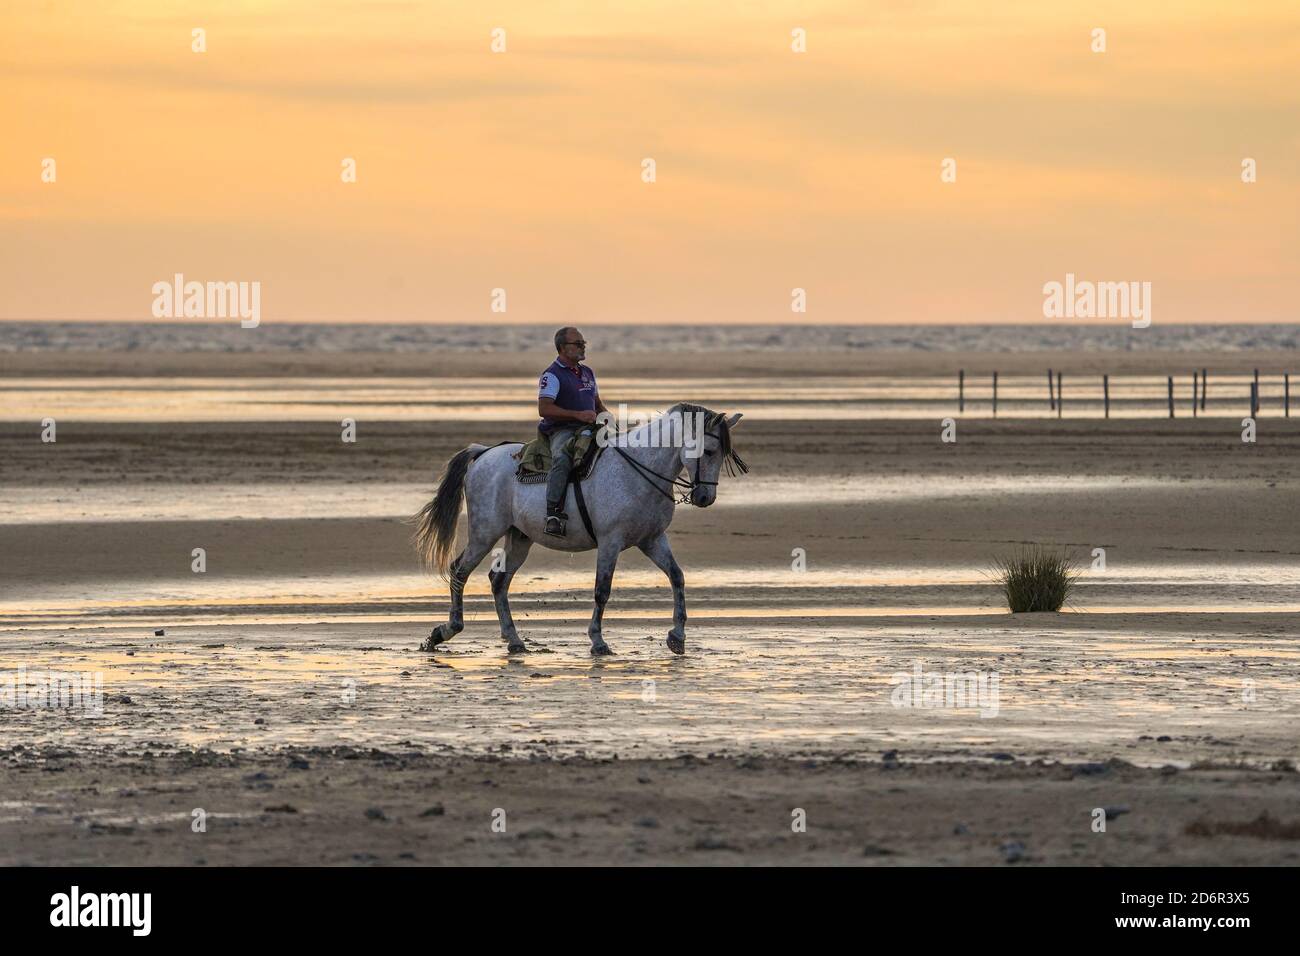 Un hombre a caballo en Playa de los Lances, playa cerca de tarifa, lagunas temporales durante la puesta de sol, Cádiz, Costa de la Luz, Andalucía, España. Foto de stock